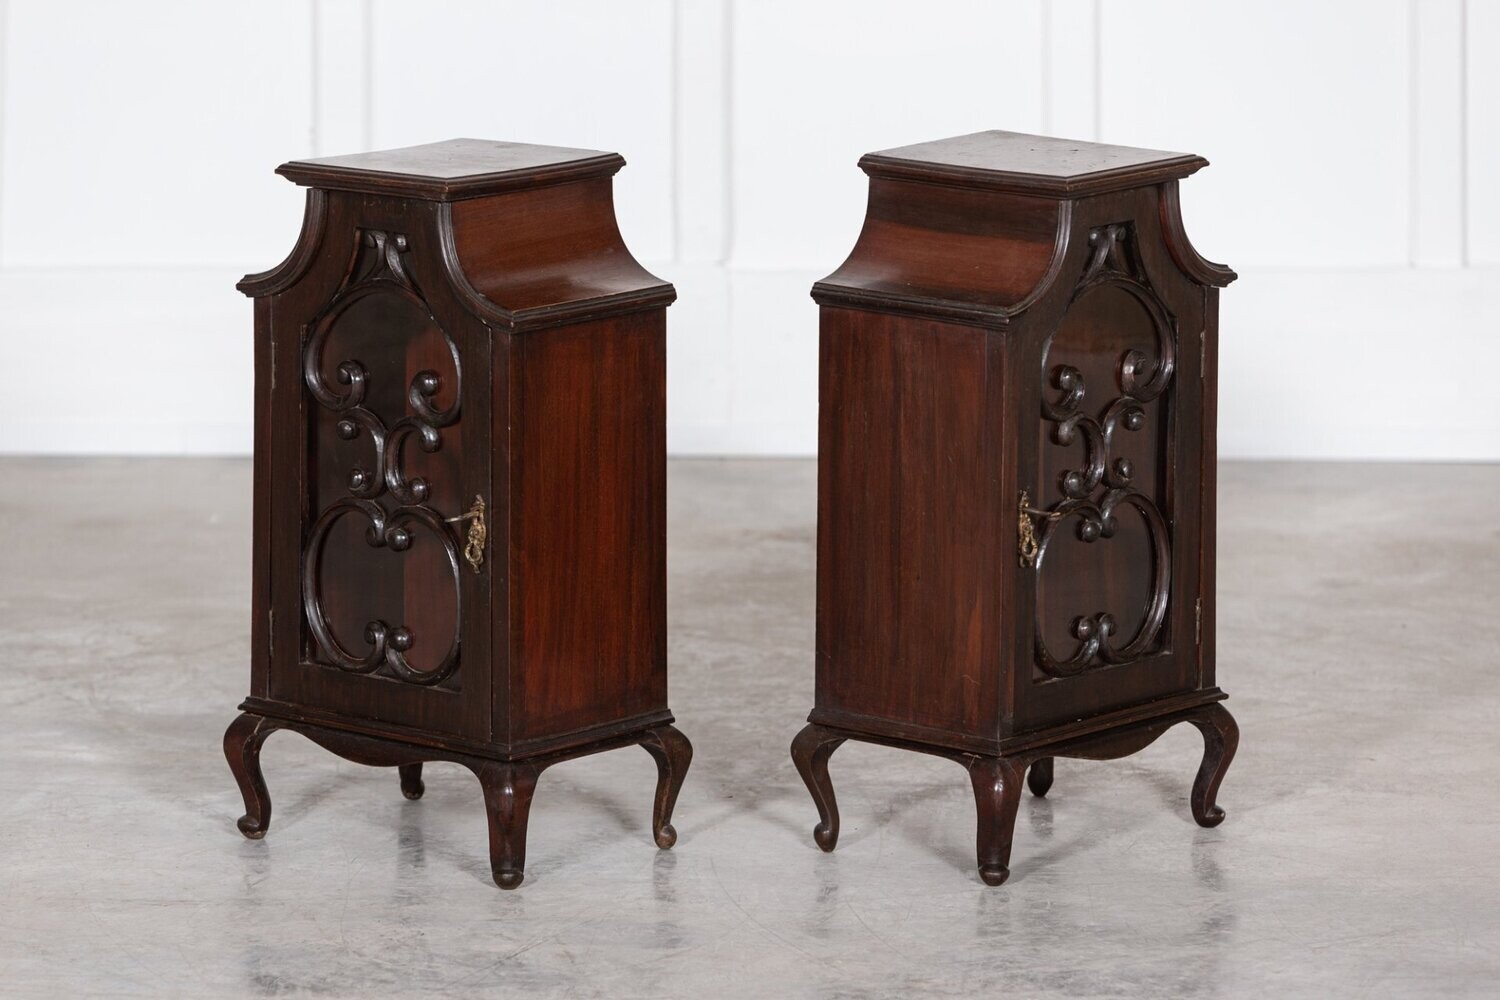 Pair 19thC English Mahogany Glazed Cabinets